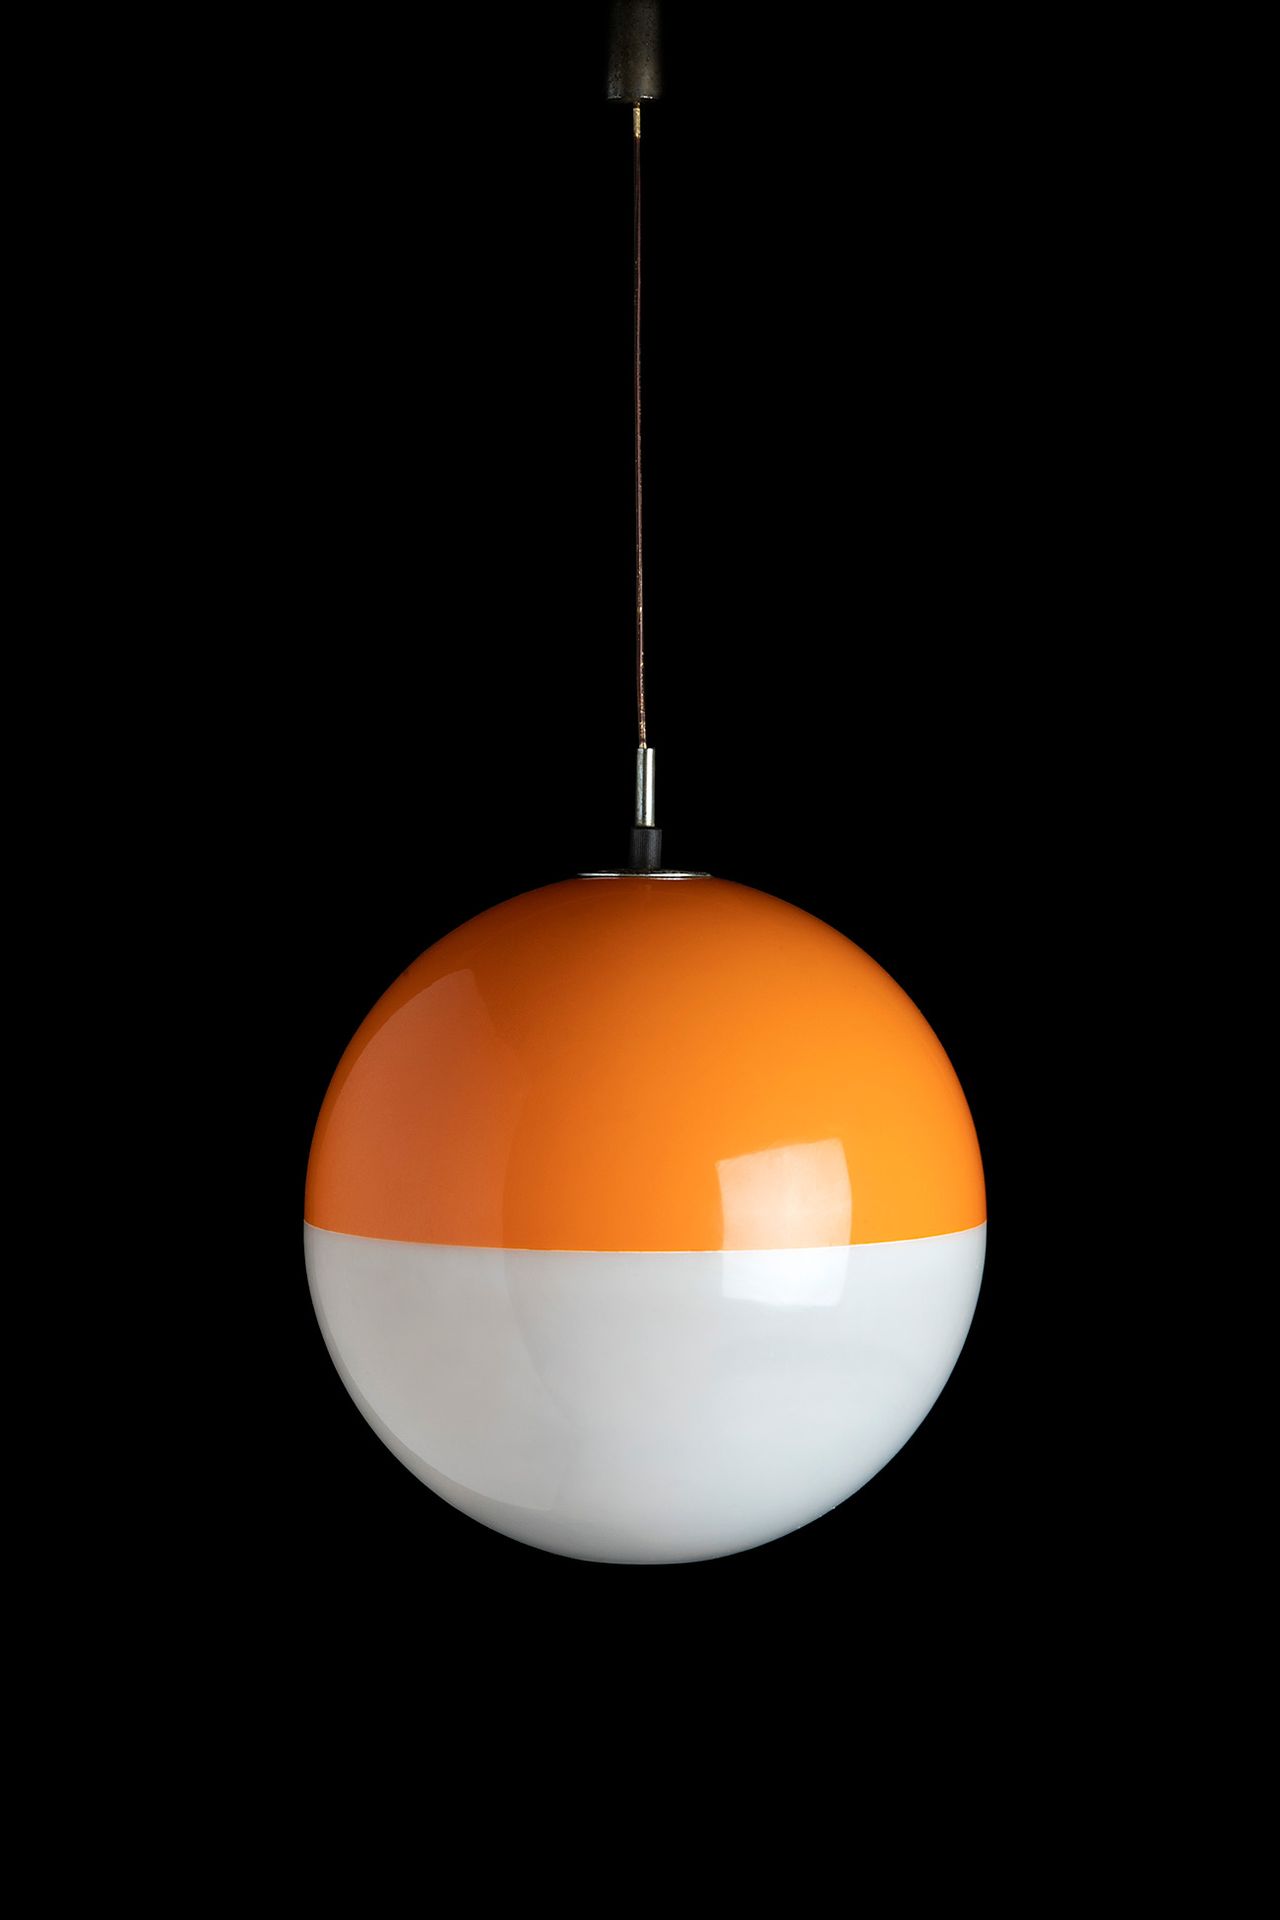 Ceiling Lamp, 1960s Lámpara de techo, años 60
Material plástico blanco y naranja&hellip;